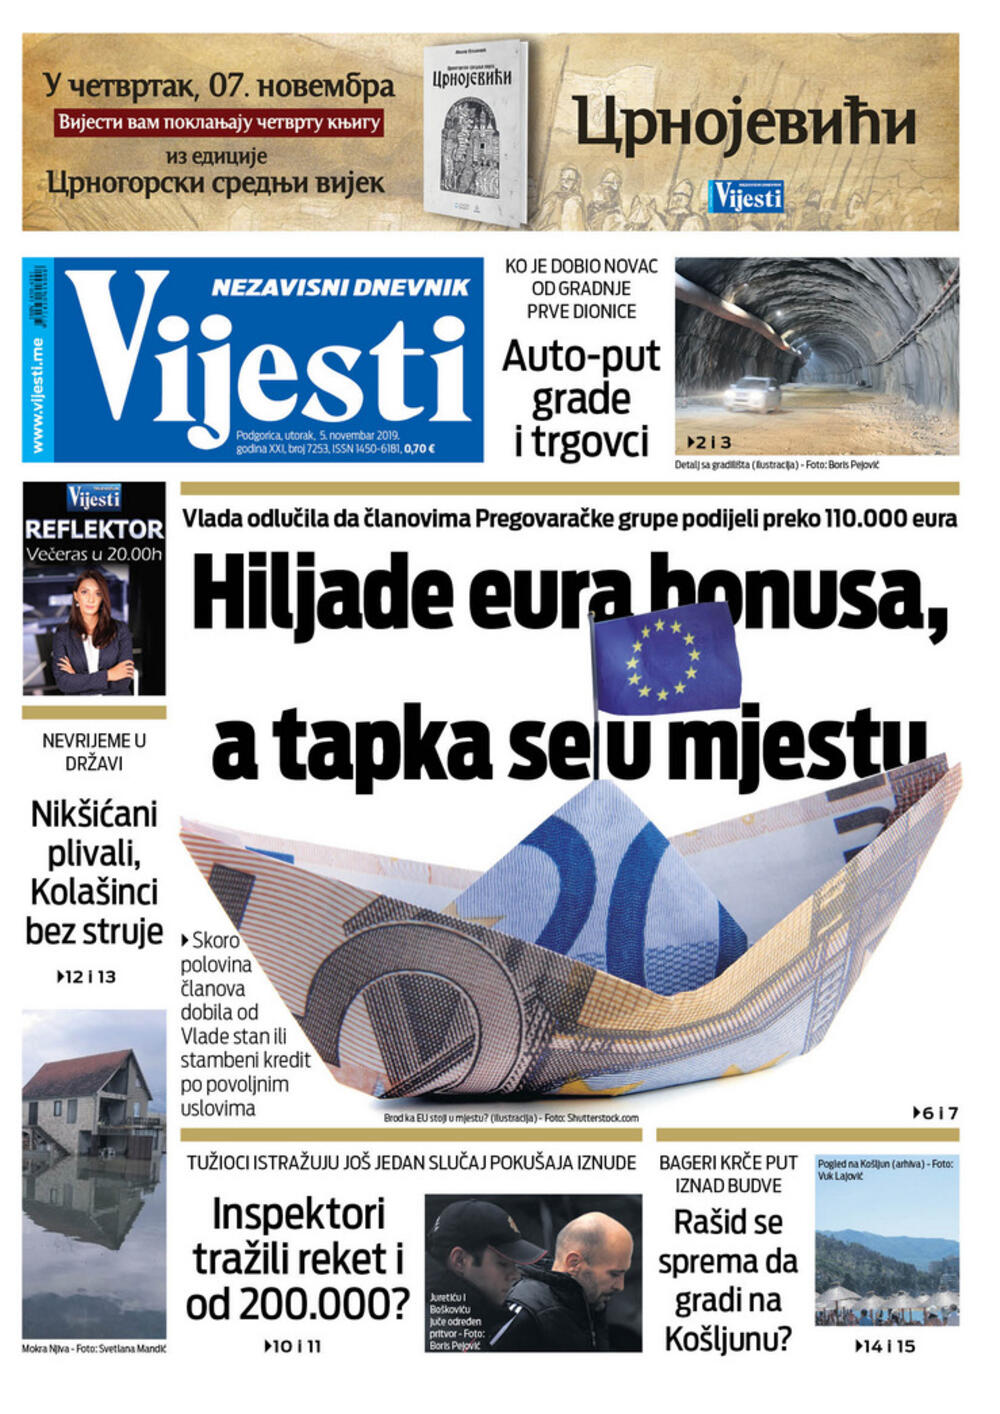 Naslovna strana "Vijesti" za 5. novembar 2019.